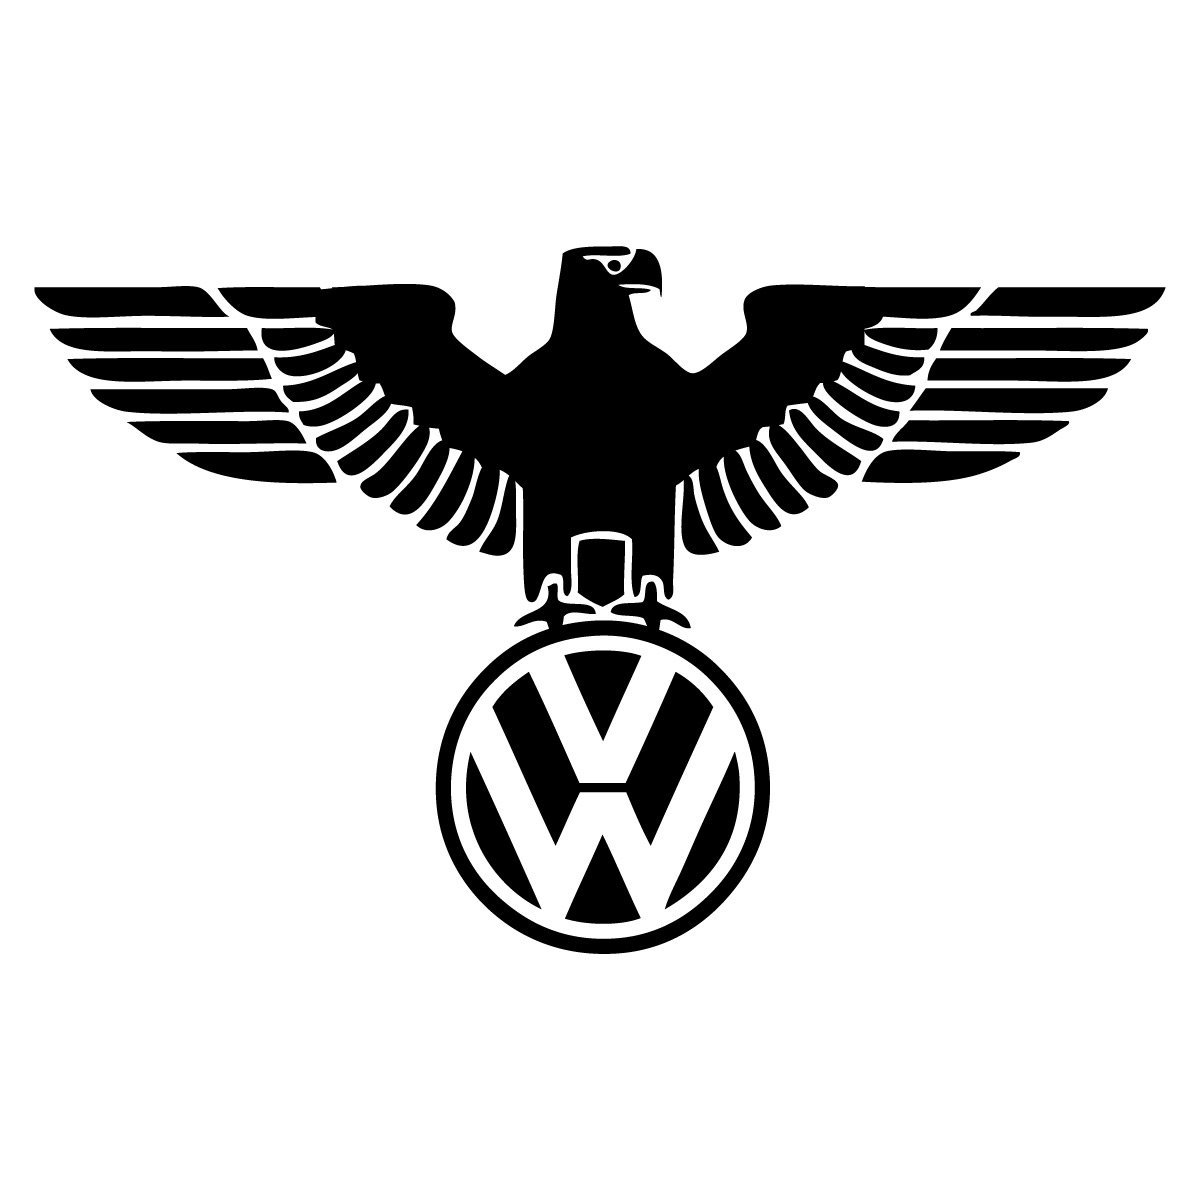 Некоторые на хот роды из VW такого орла наносят). 